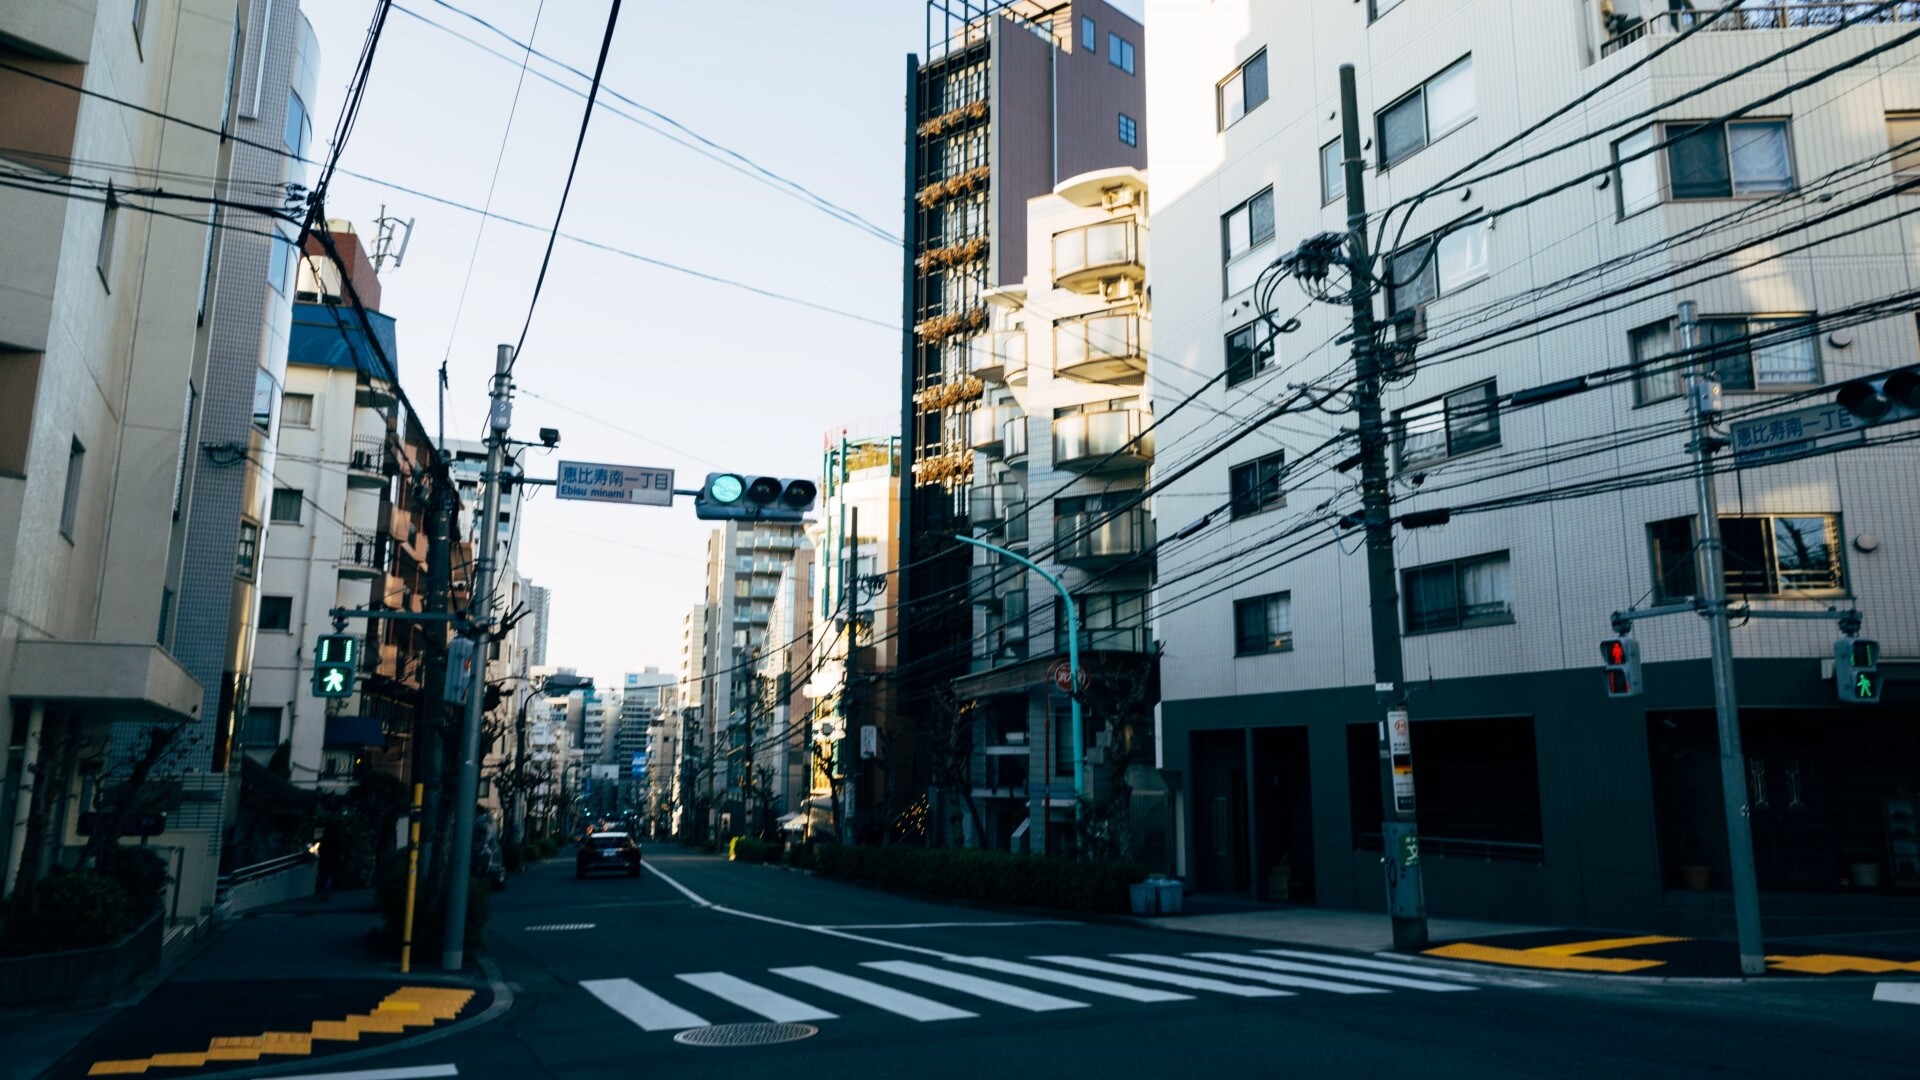 日本街道场景高清动态壁纸